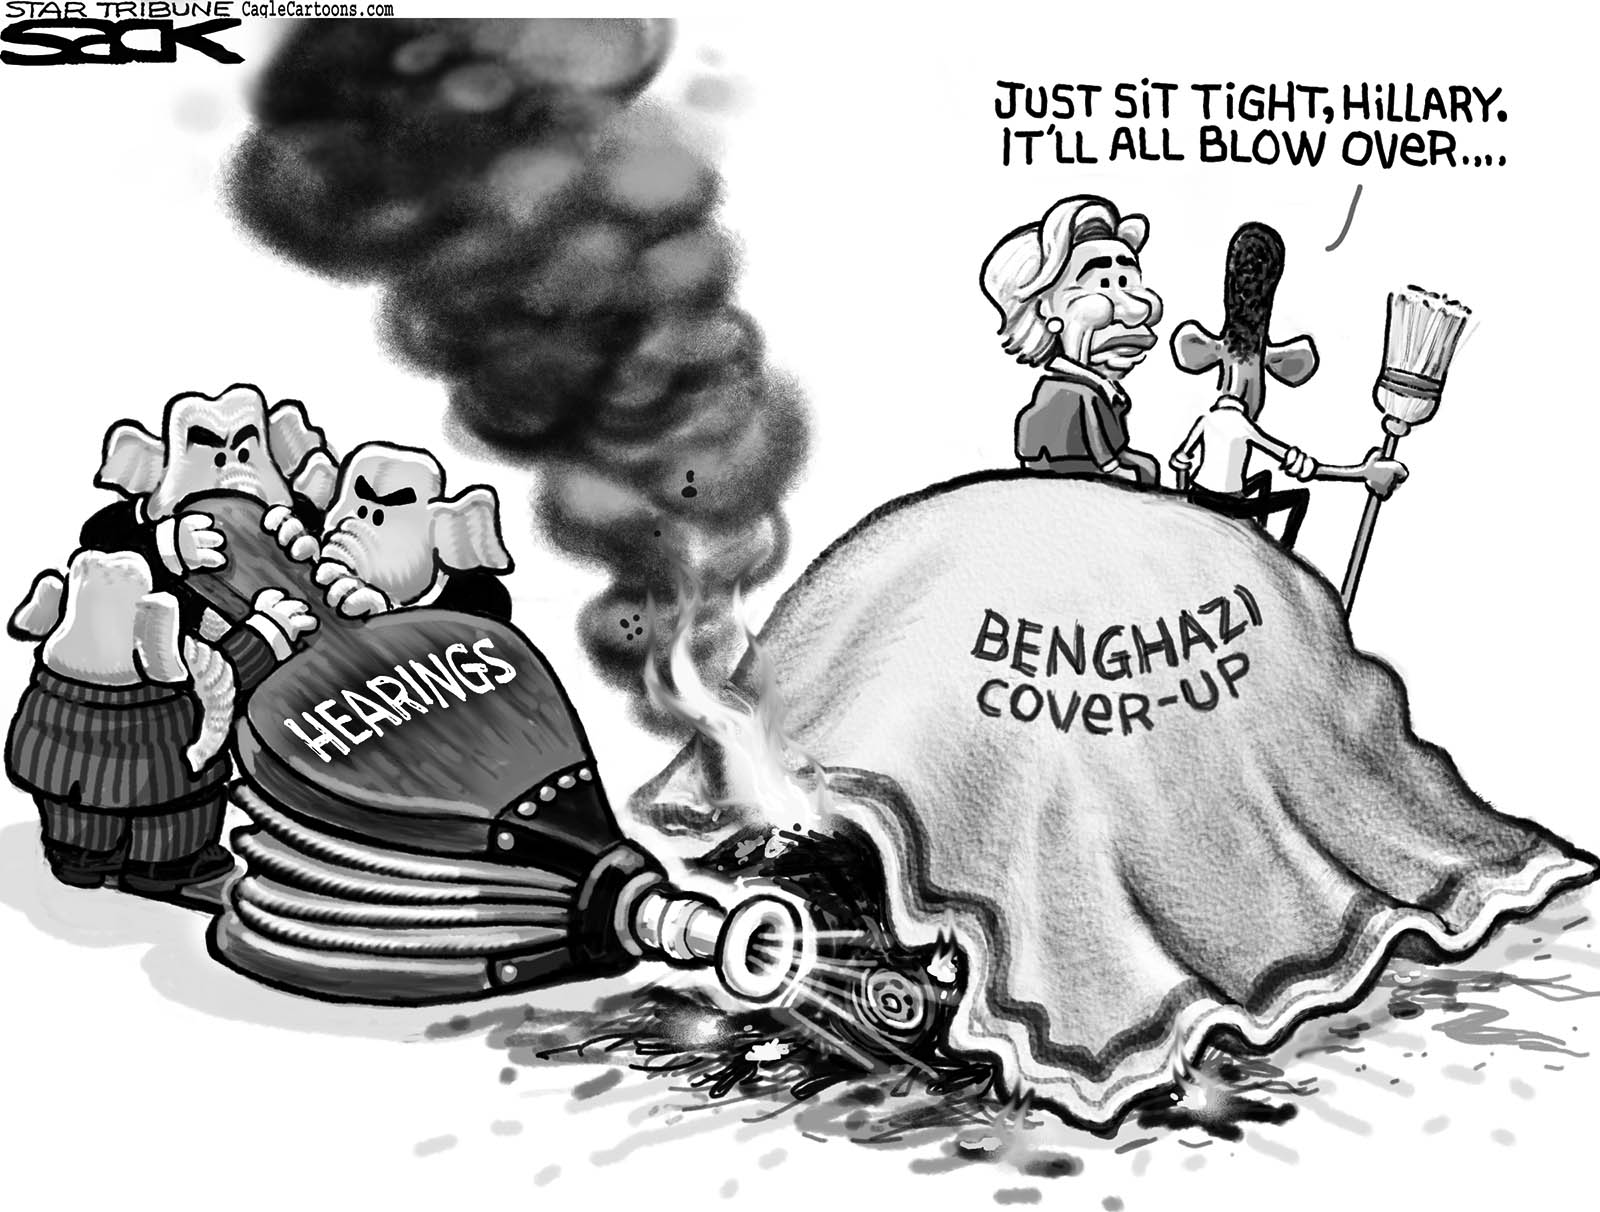 Benghazi Will Blow Over